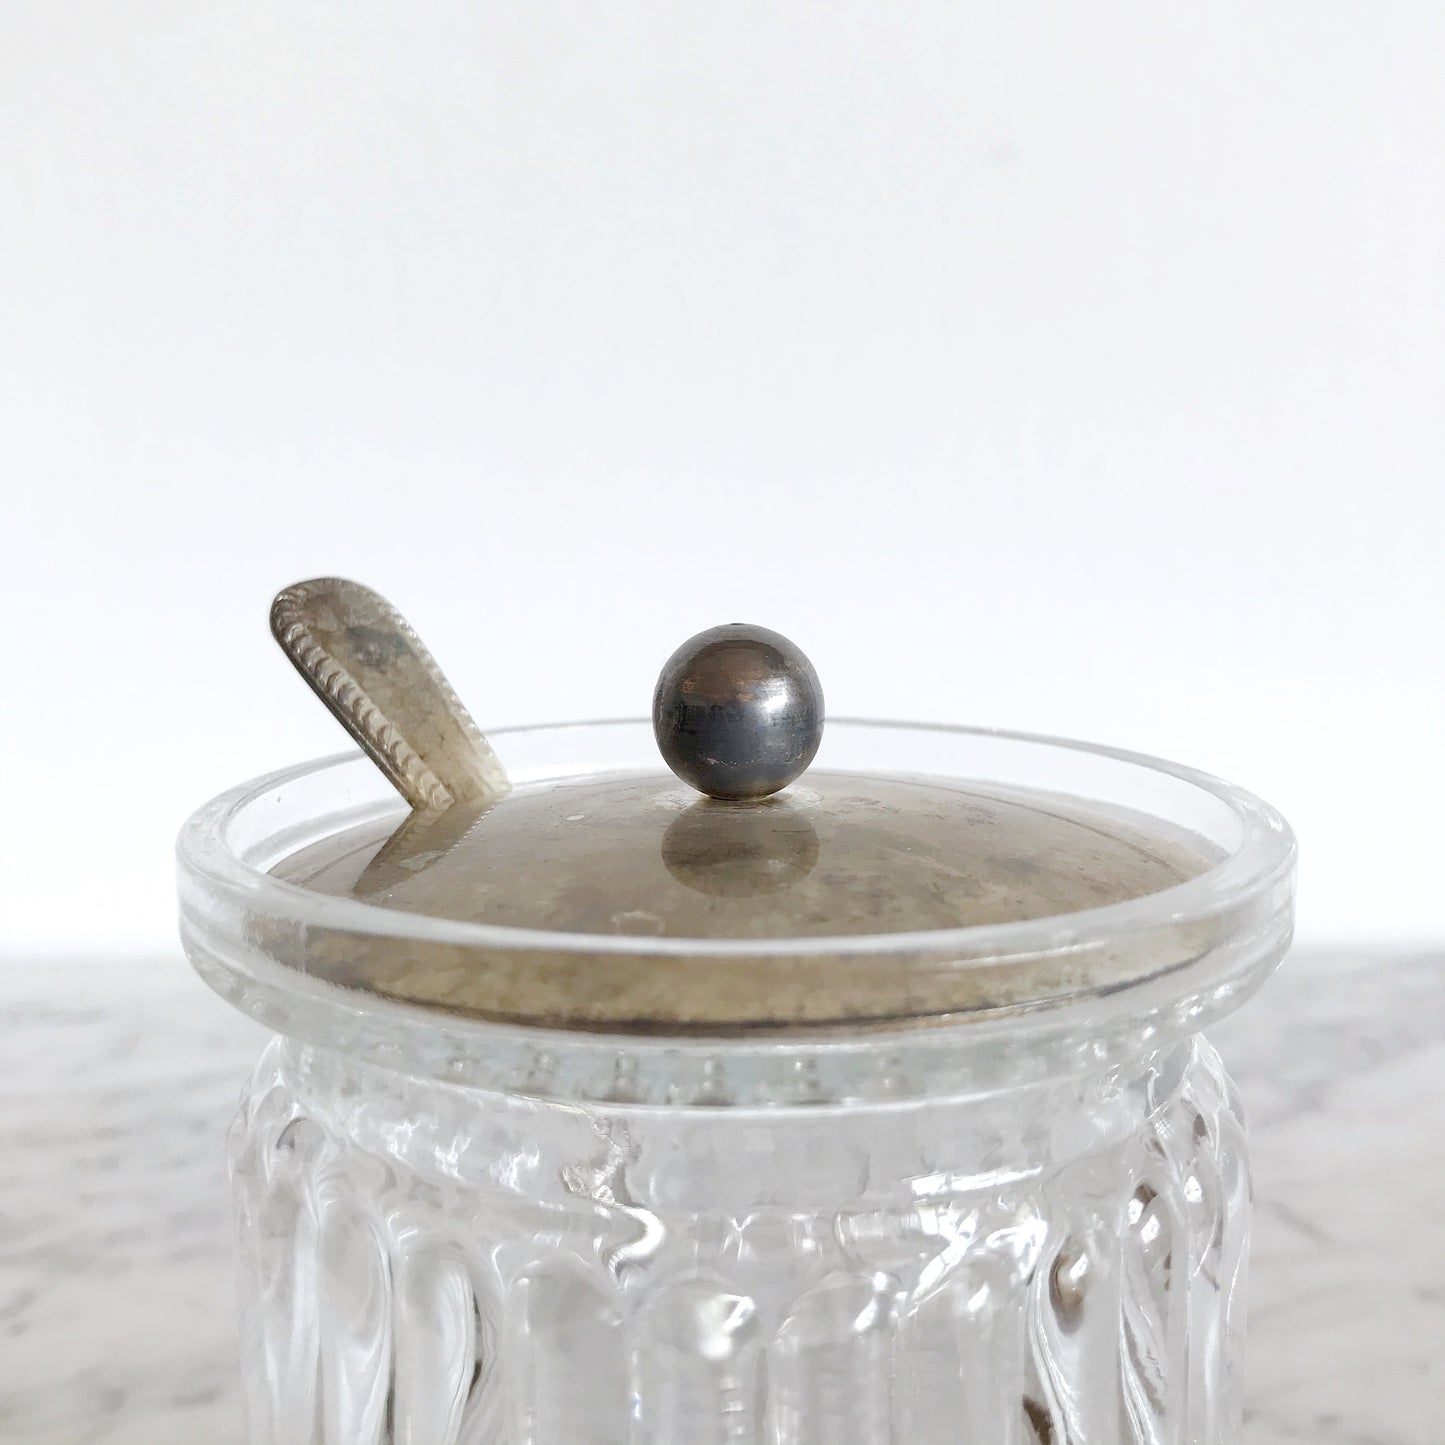 Vintage Marmalade Jar & Silver Spoon